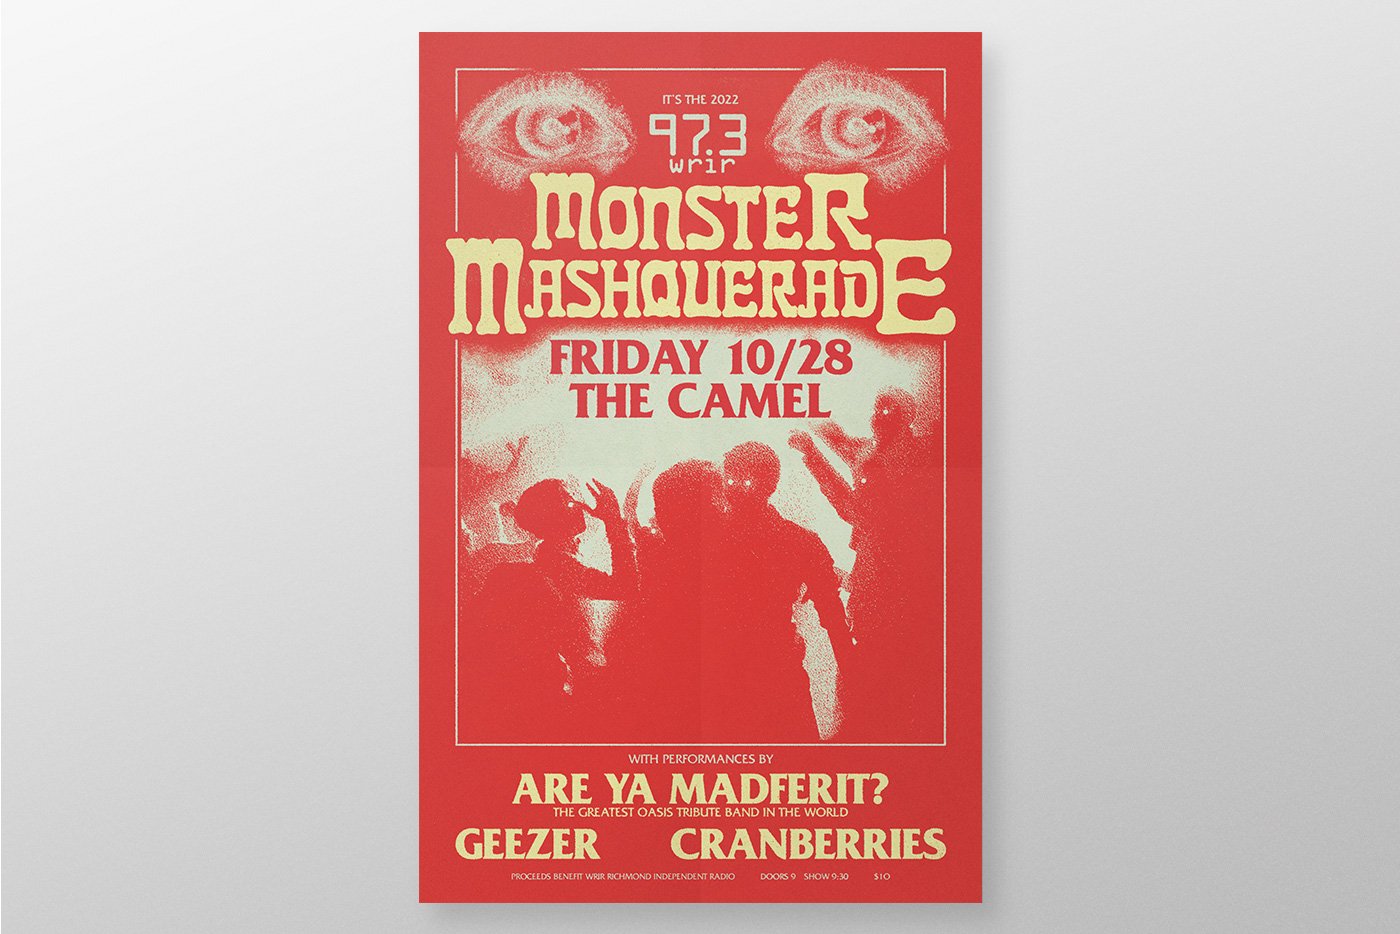 WRIR Monster Mashquerade Poster